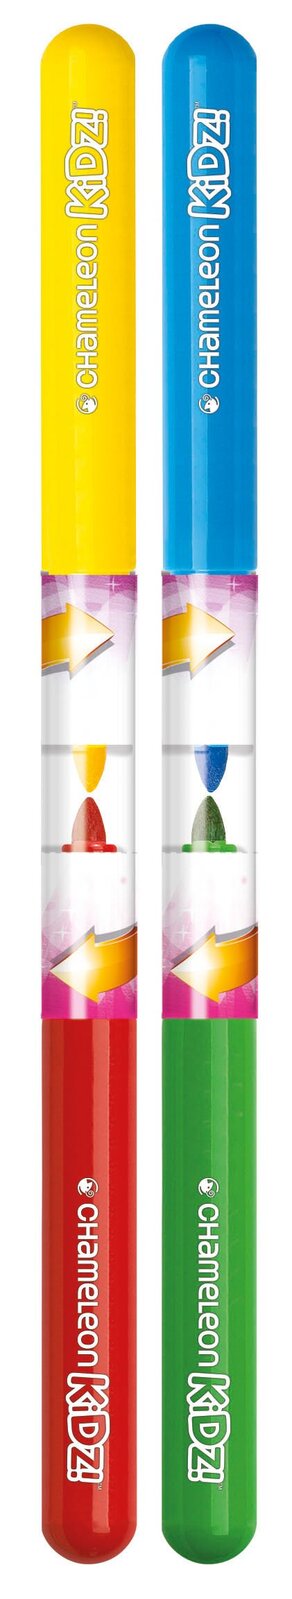 Blendy Pens Blend & Spray- 4 Marker Kit